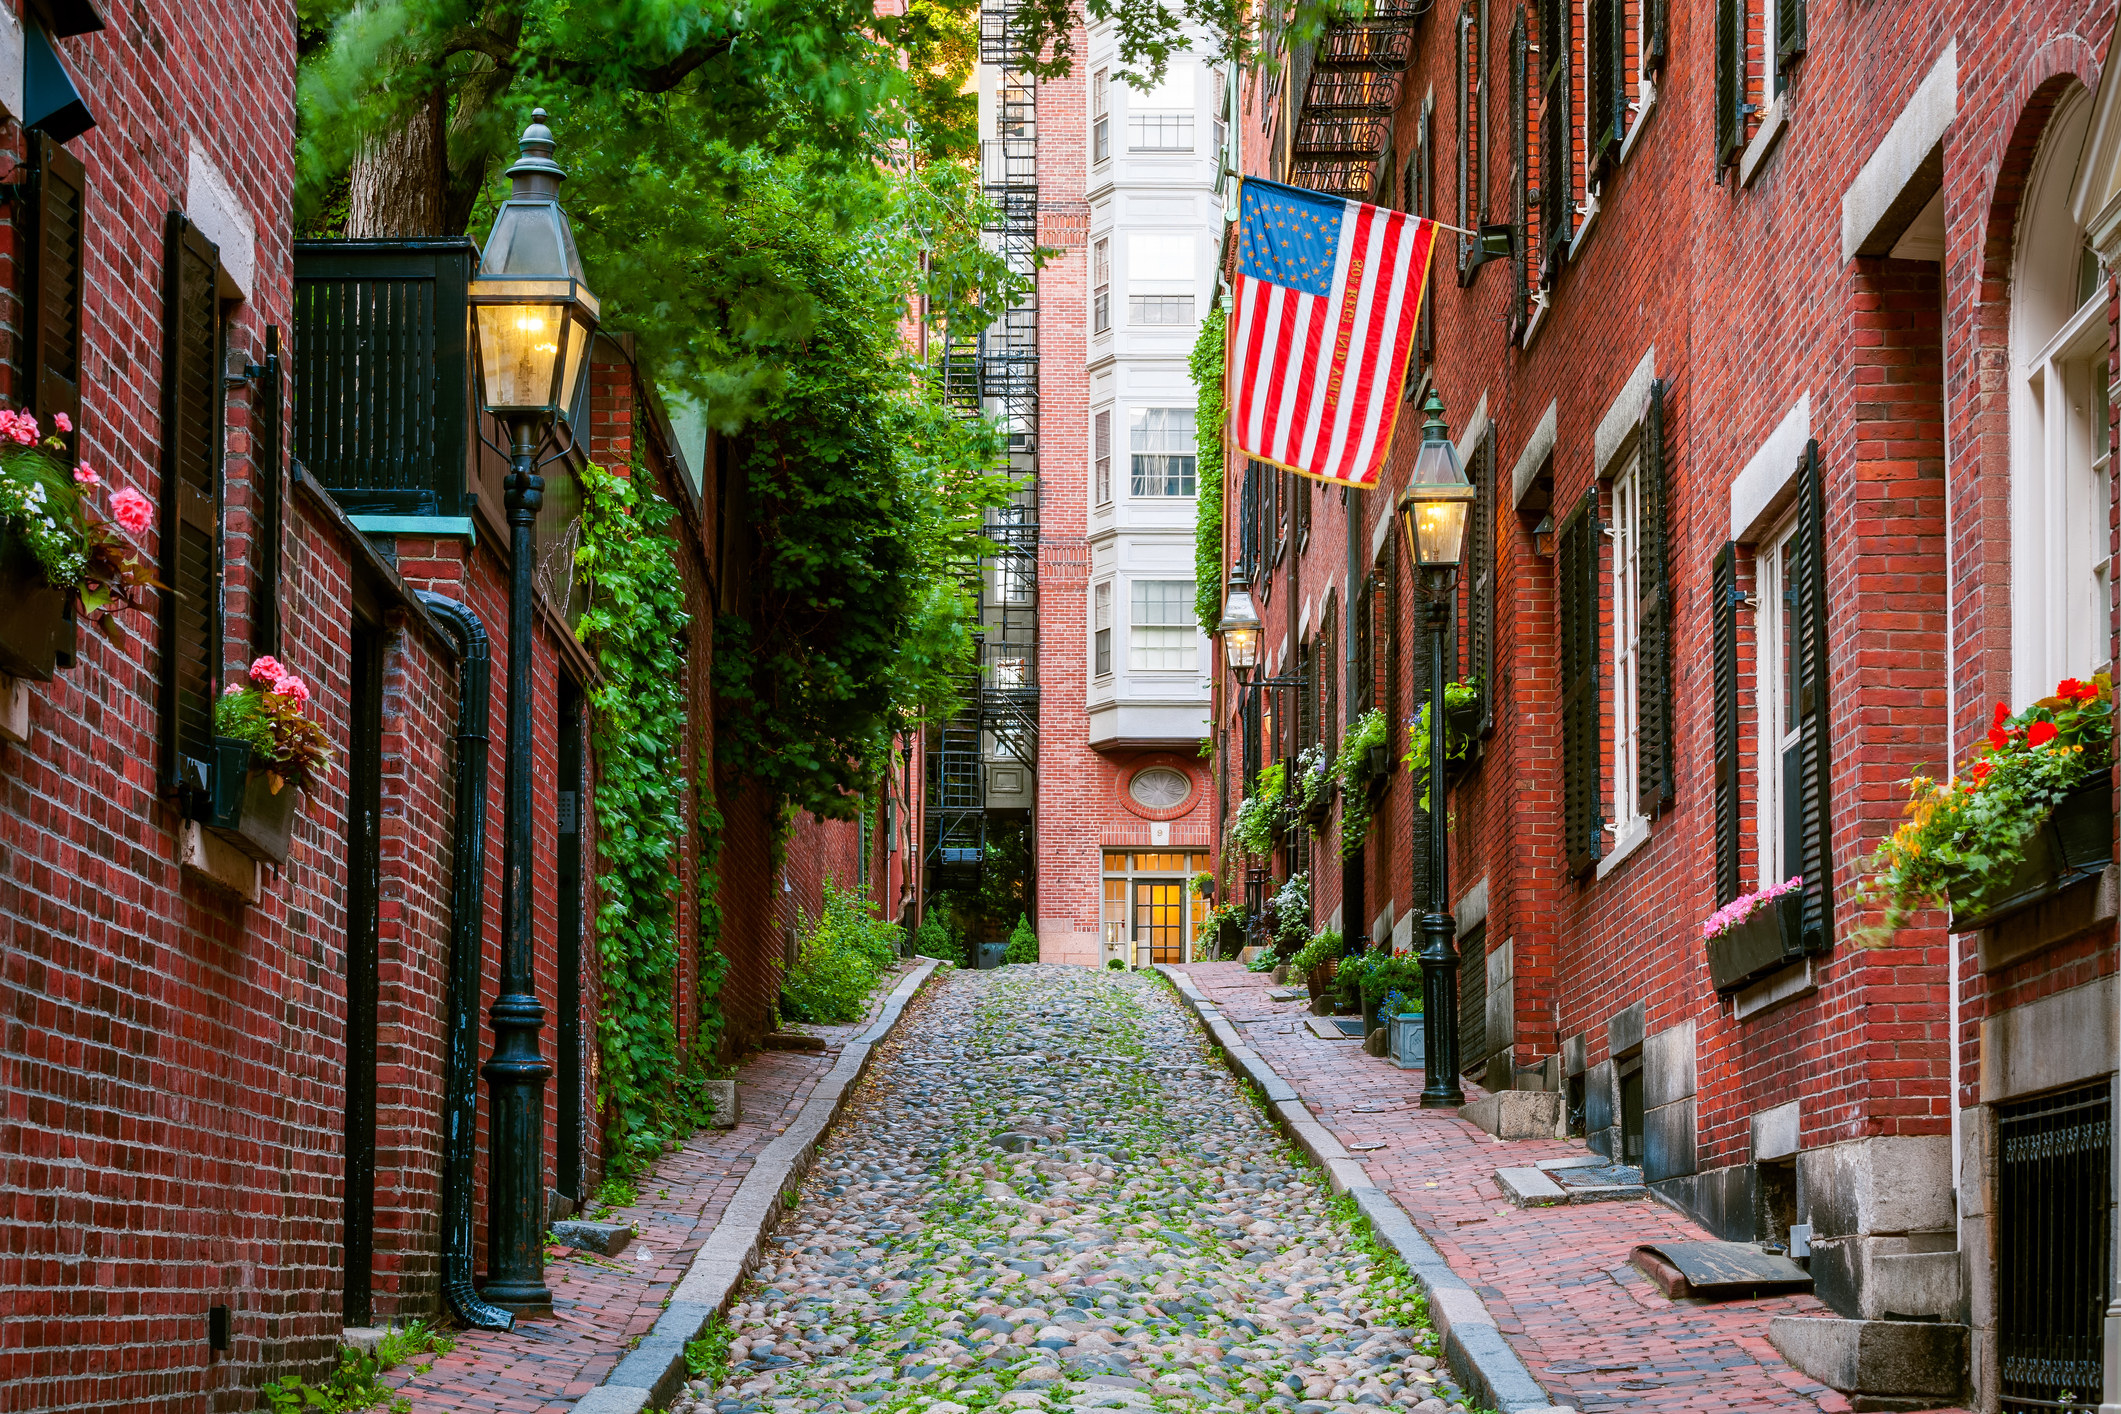 A cute cobblestone street in Boston.